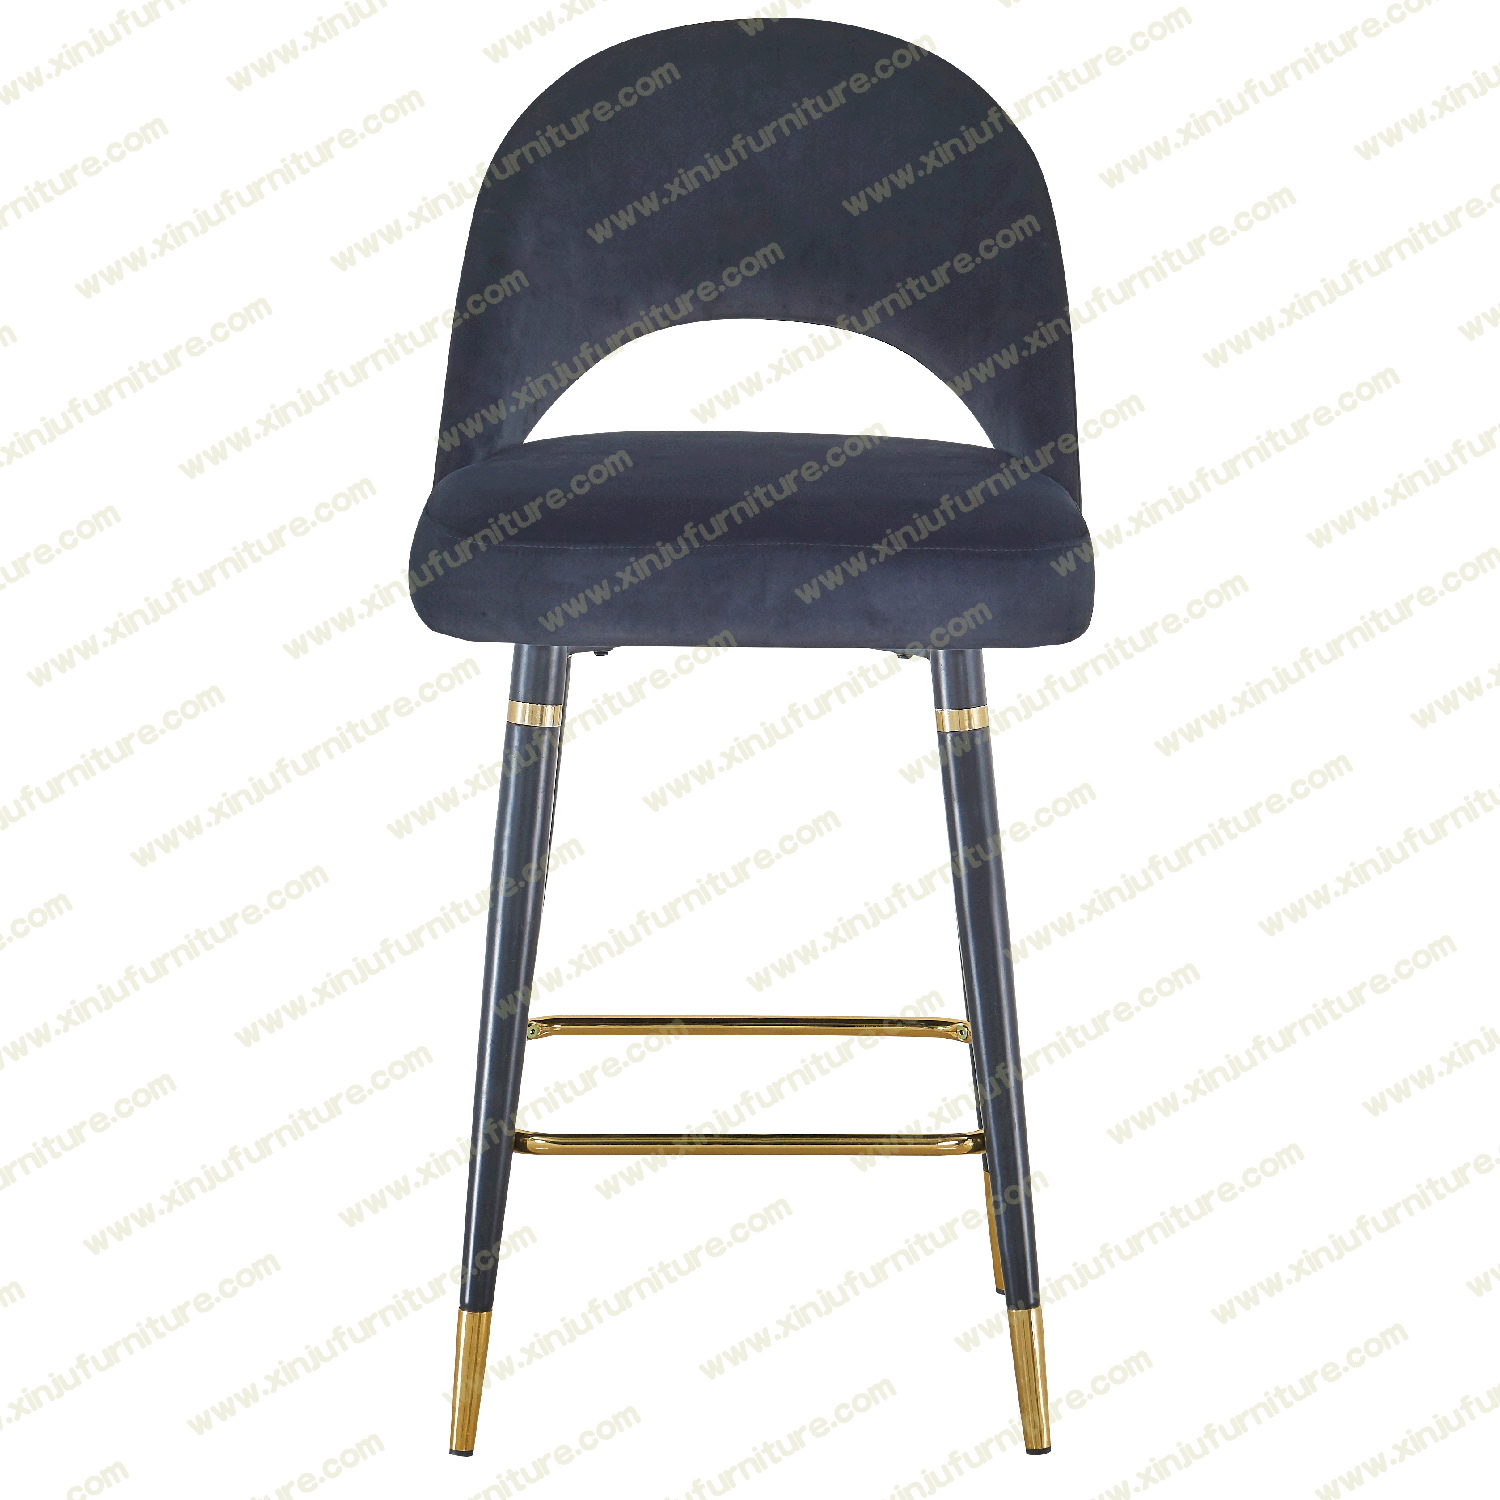 Black high-grade bar chair